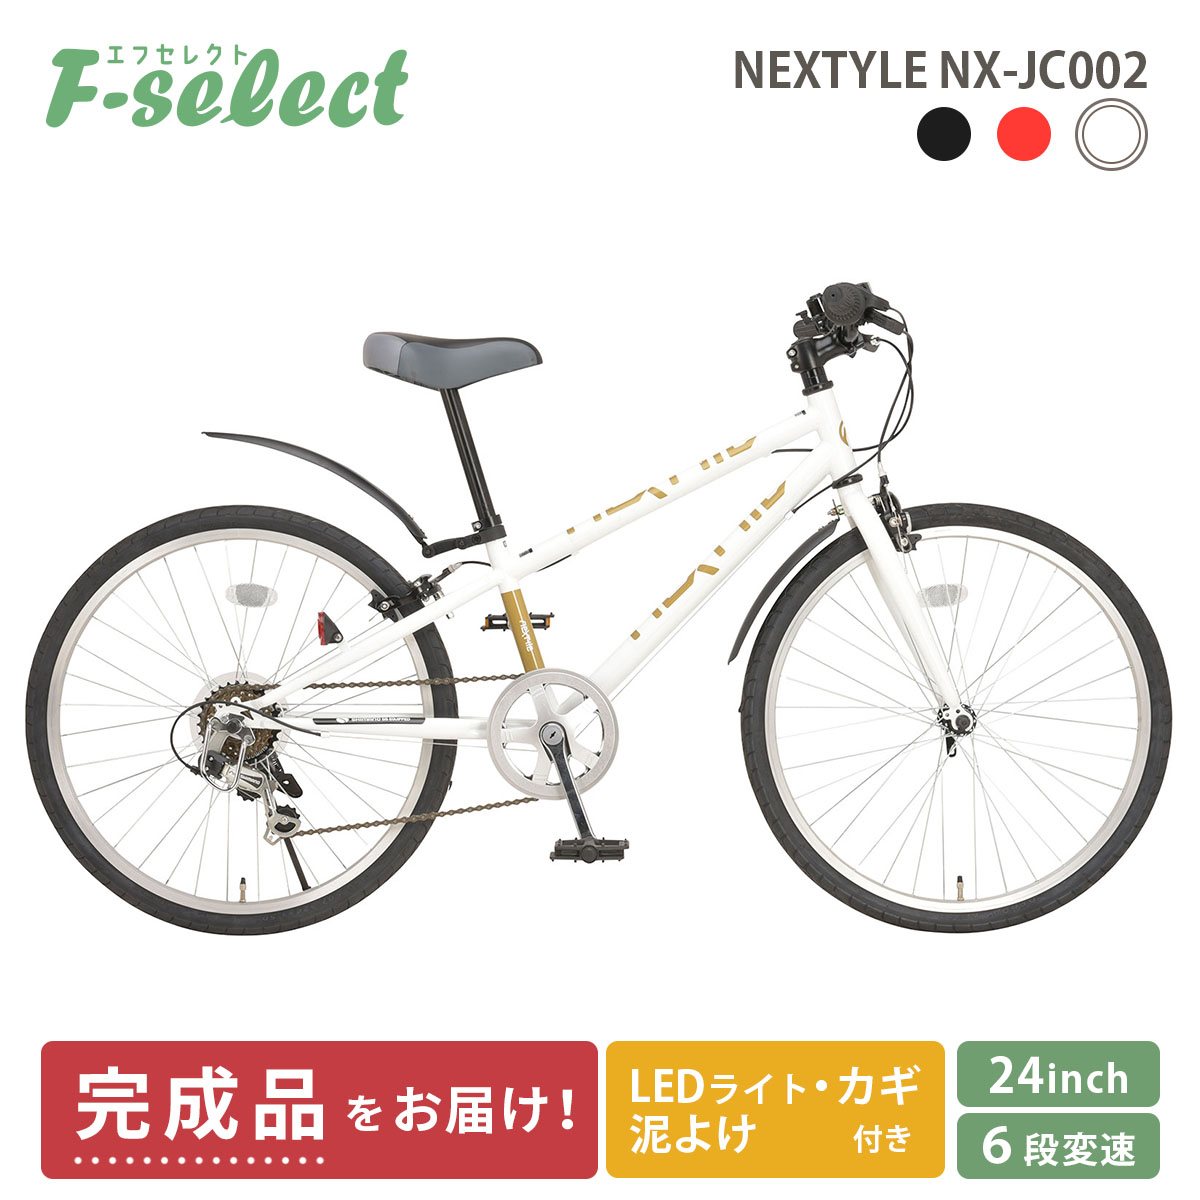 子供用自転車 クロスバイク 完成品出荷 / 置き配可能 24インチ 泥除け・ライト・カギ付き シマノ6段変速 ネクスタイル NEXTYLE  NX-JC002